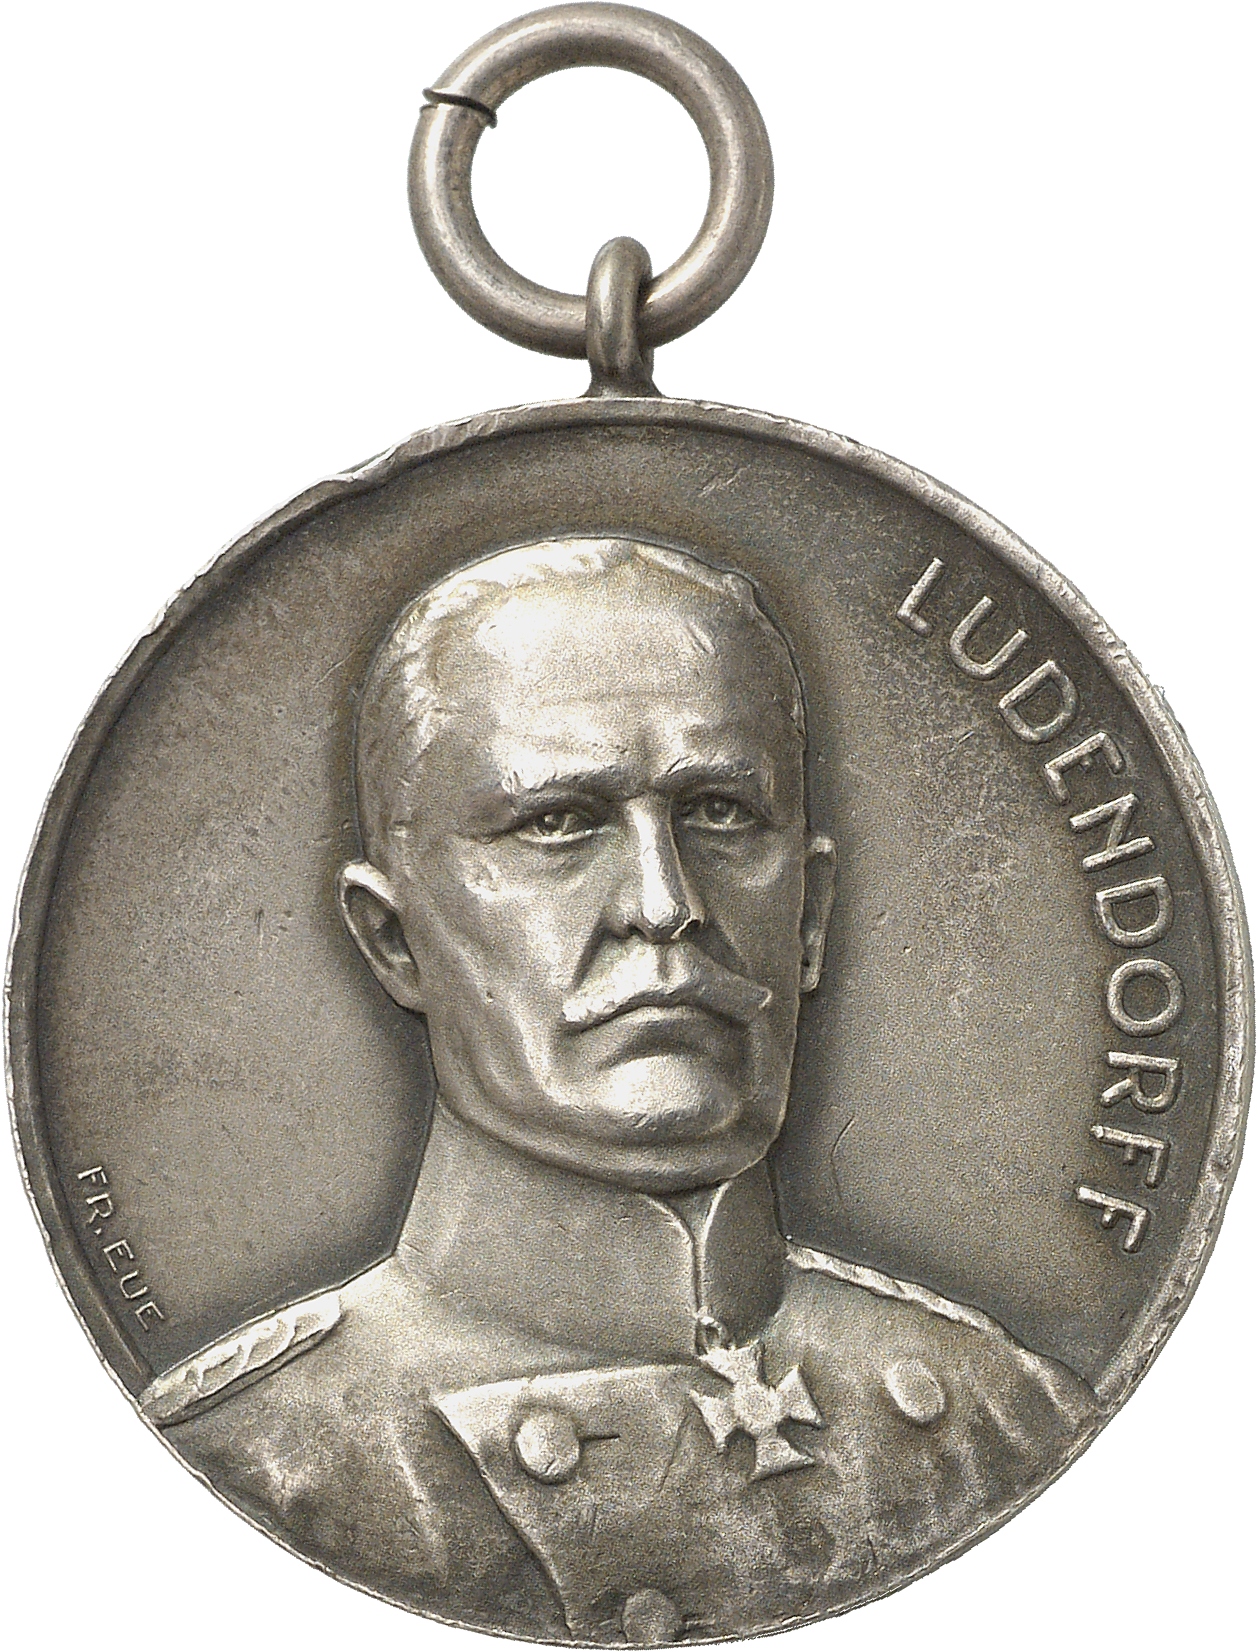 Eue, Franz: General Erich Ludendorff